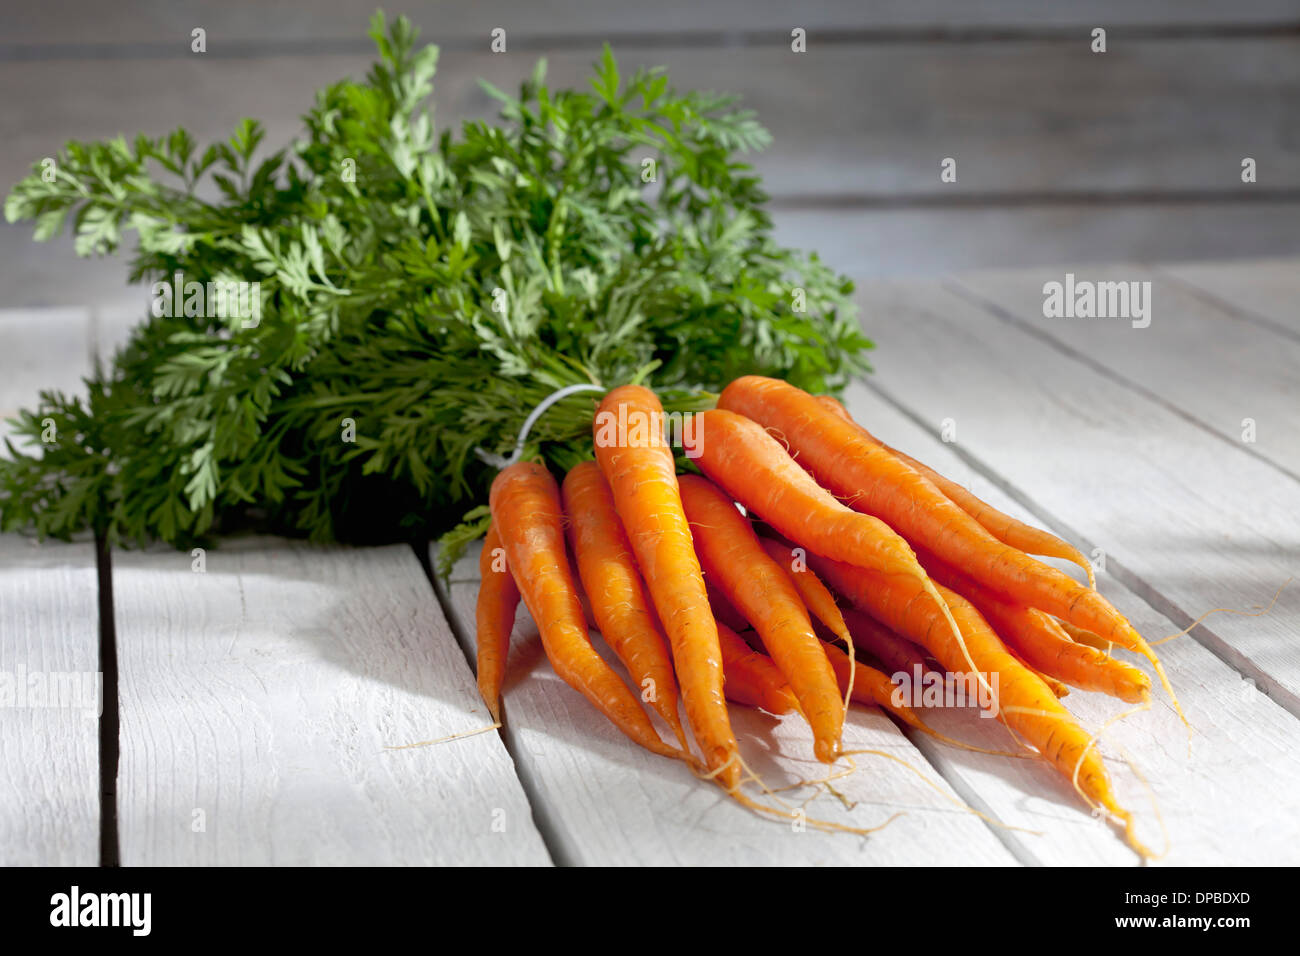 Botte de carottes sur table en bois Banque D'Images